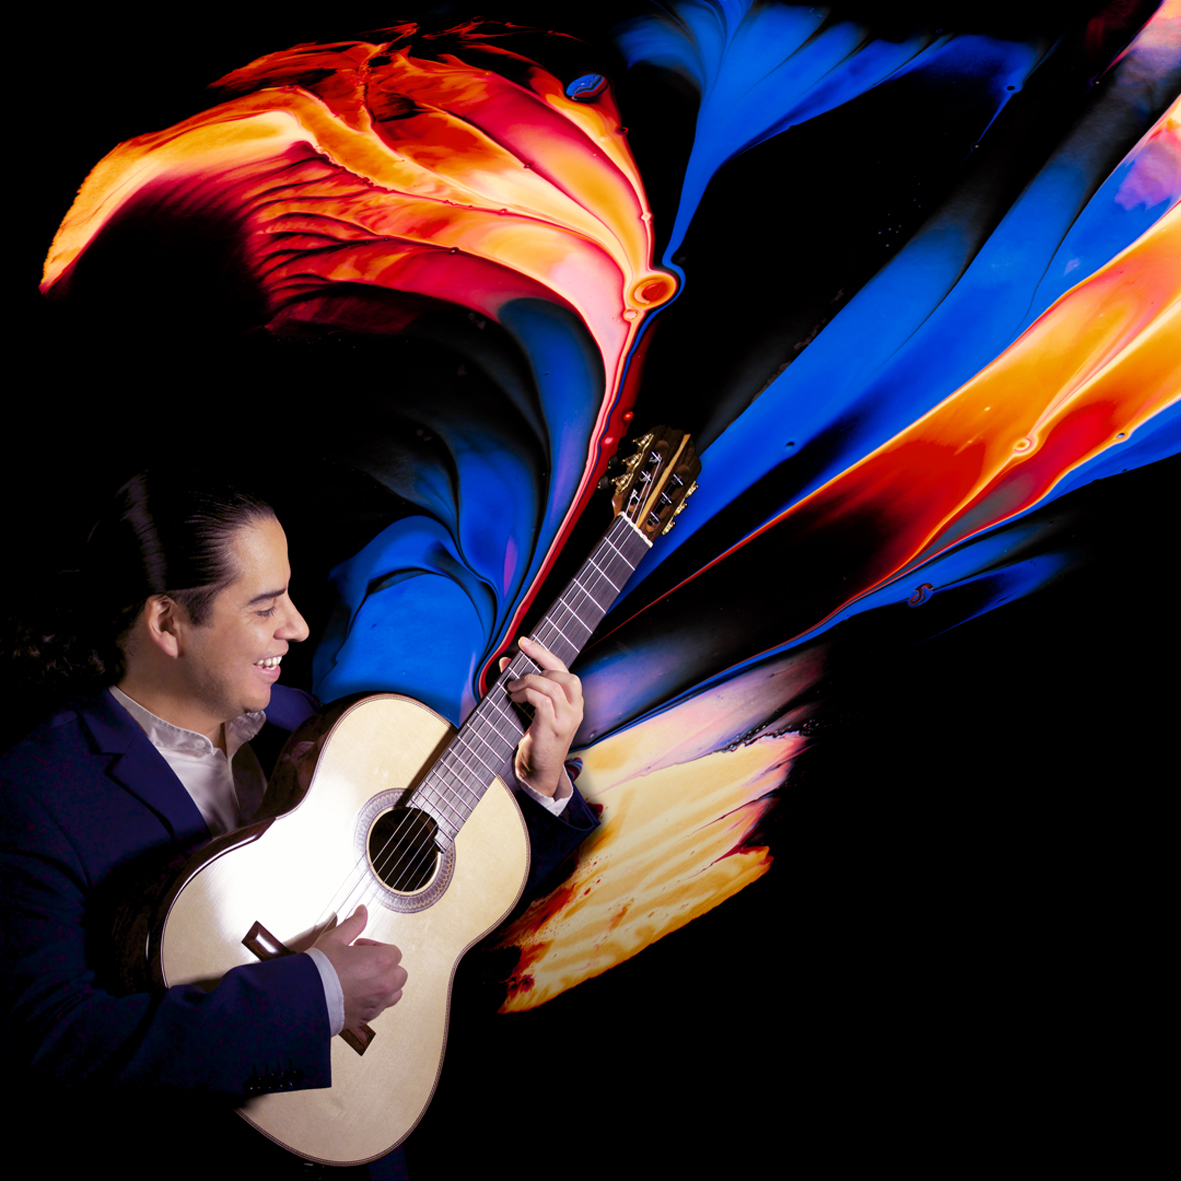 Ein Mann spielt Gitarre vor einem schwarzen Hintergrund, aus dem Instrument strömen bunte Farben.